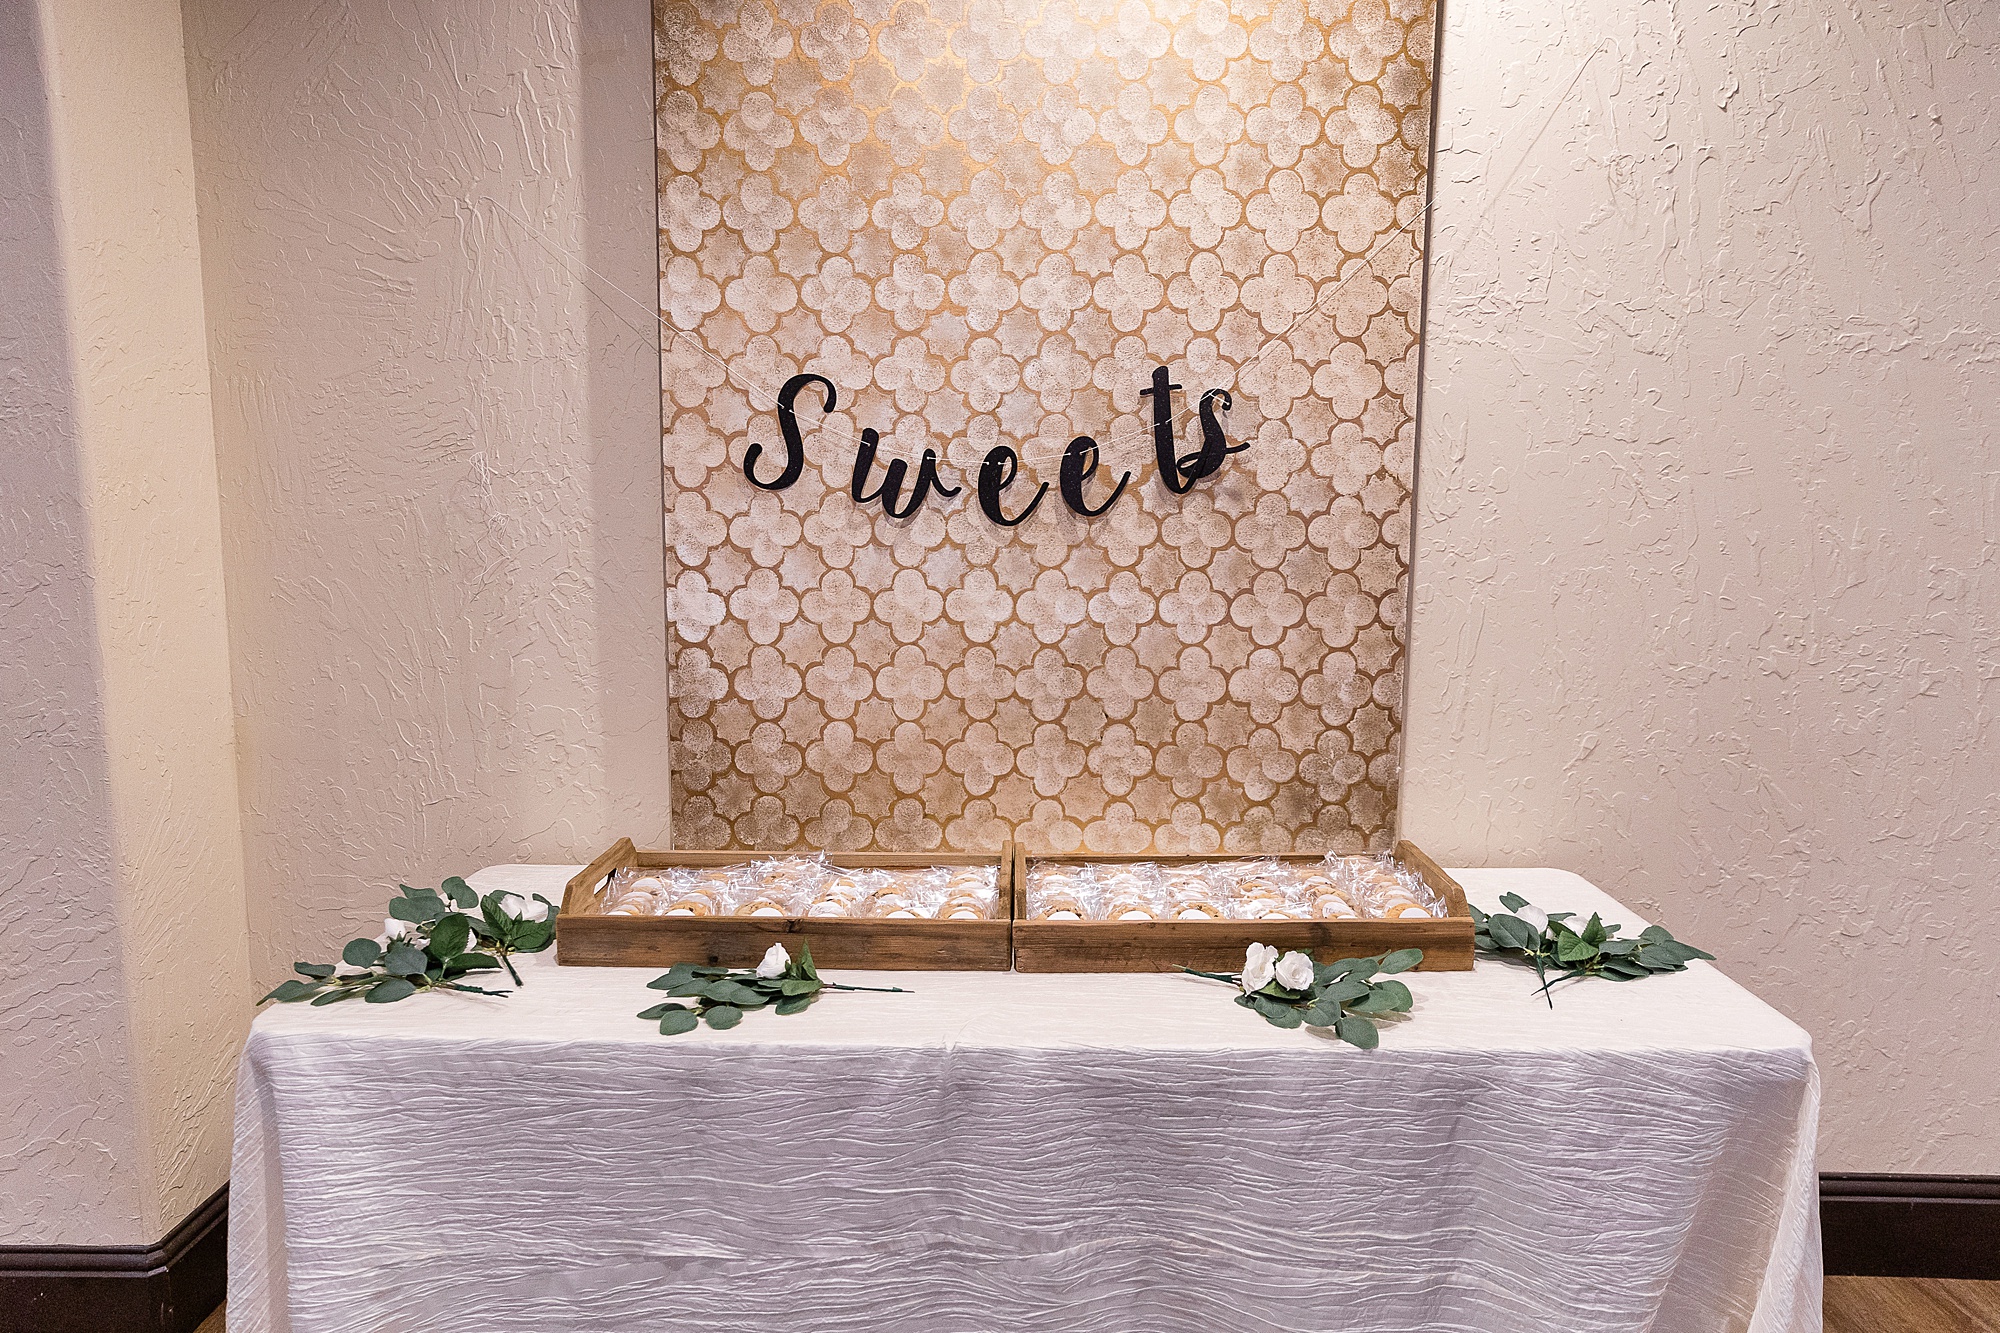 sweets sign at Chapel at Ana Villa wedding reception 